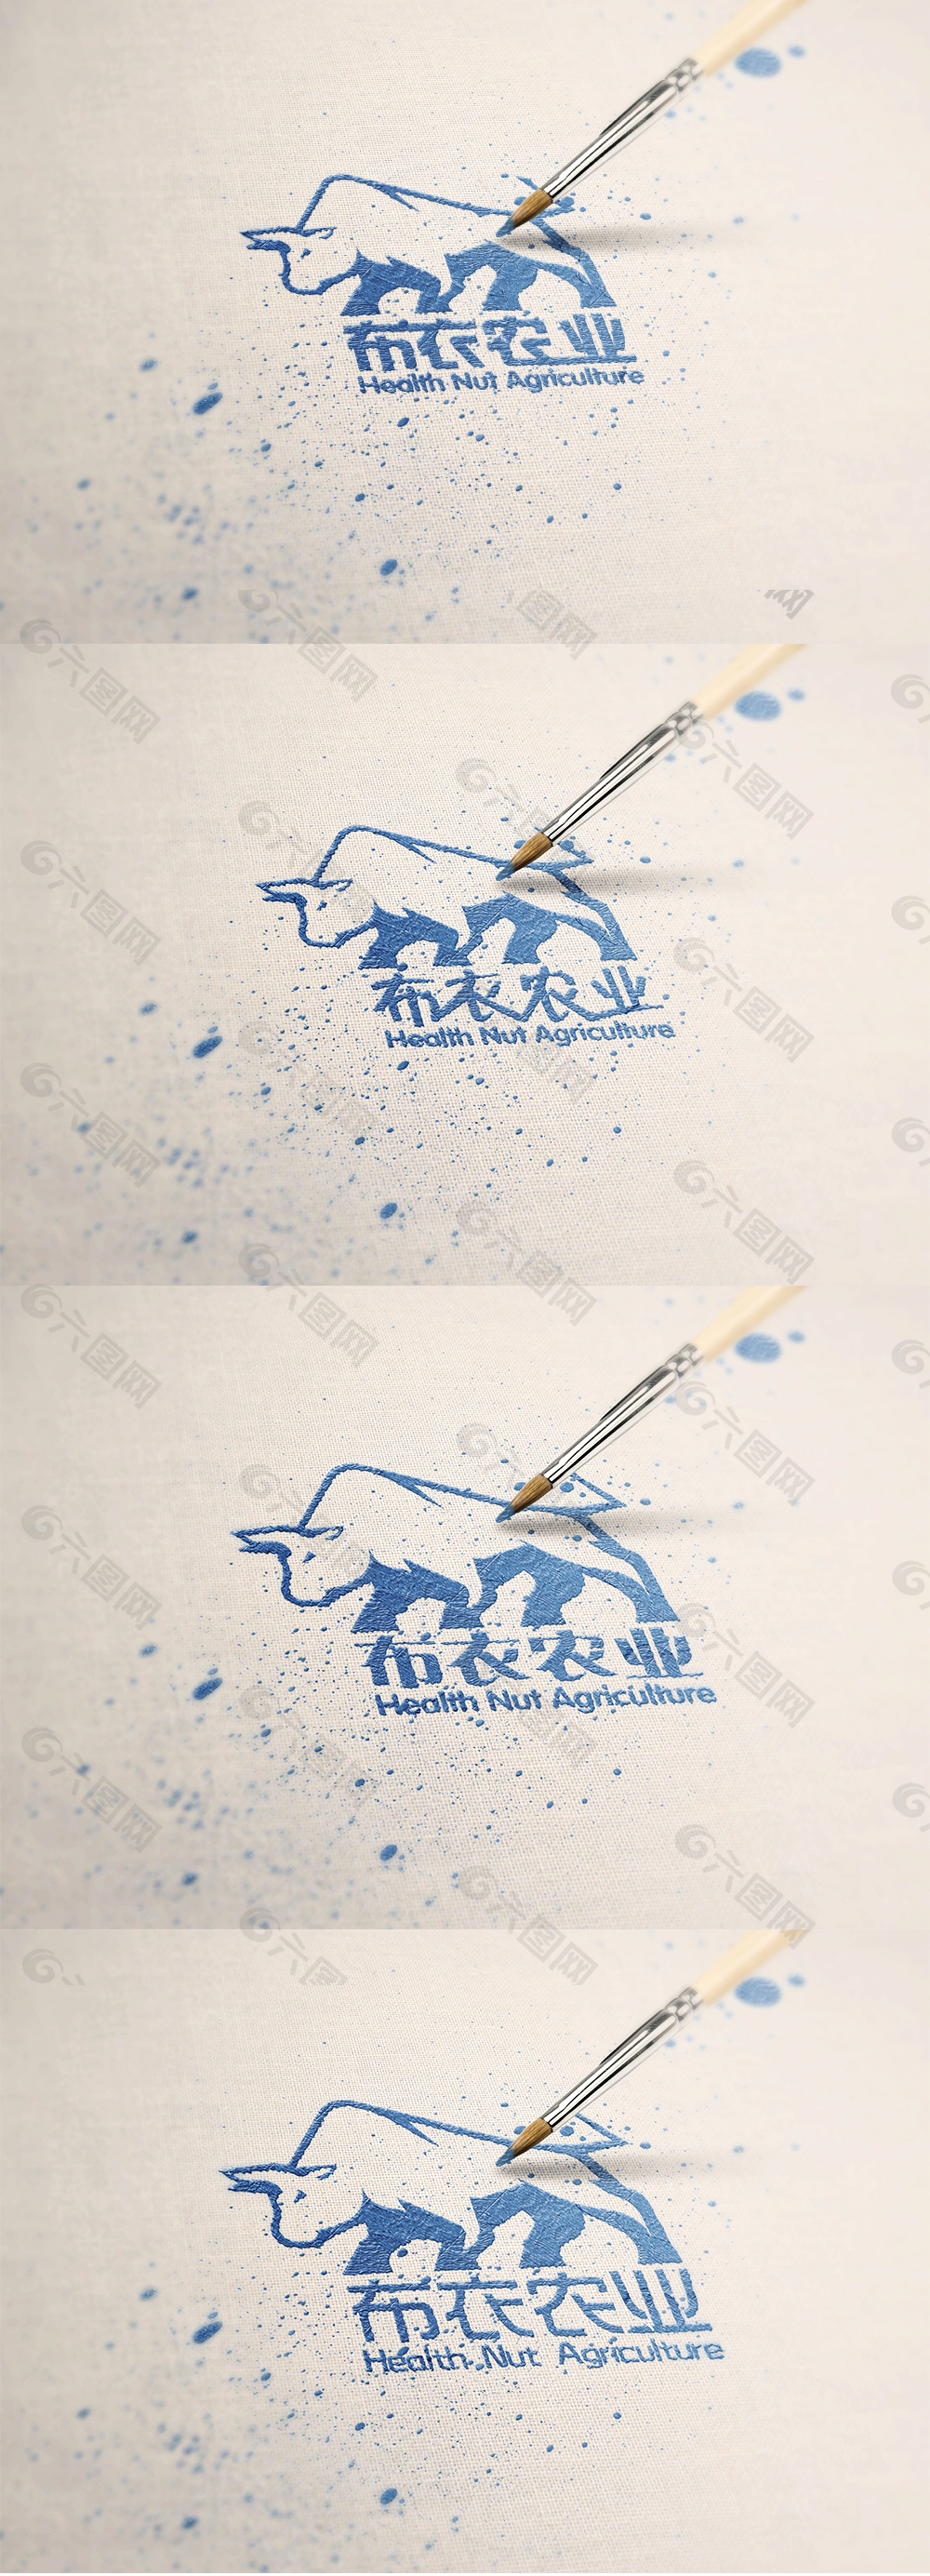 布衣农业logo中文字体变形